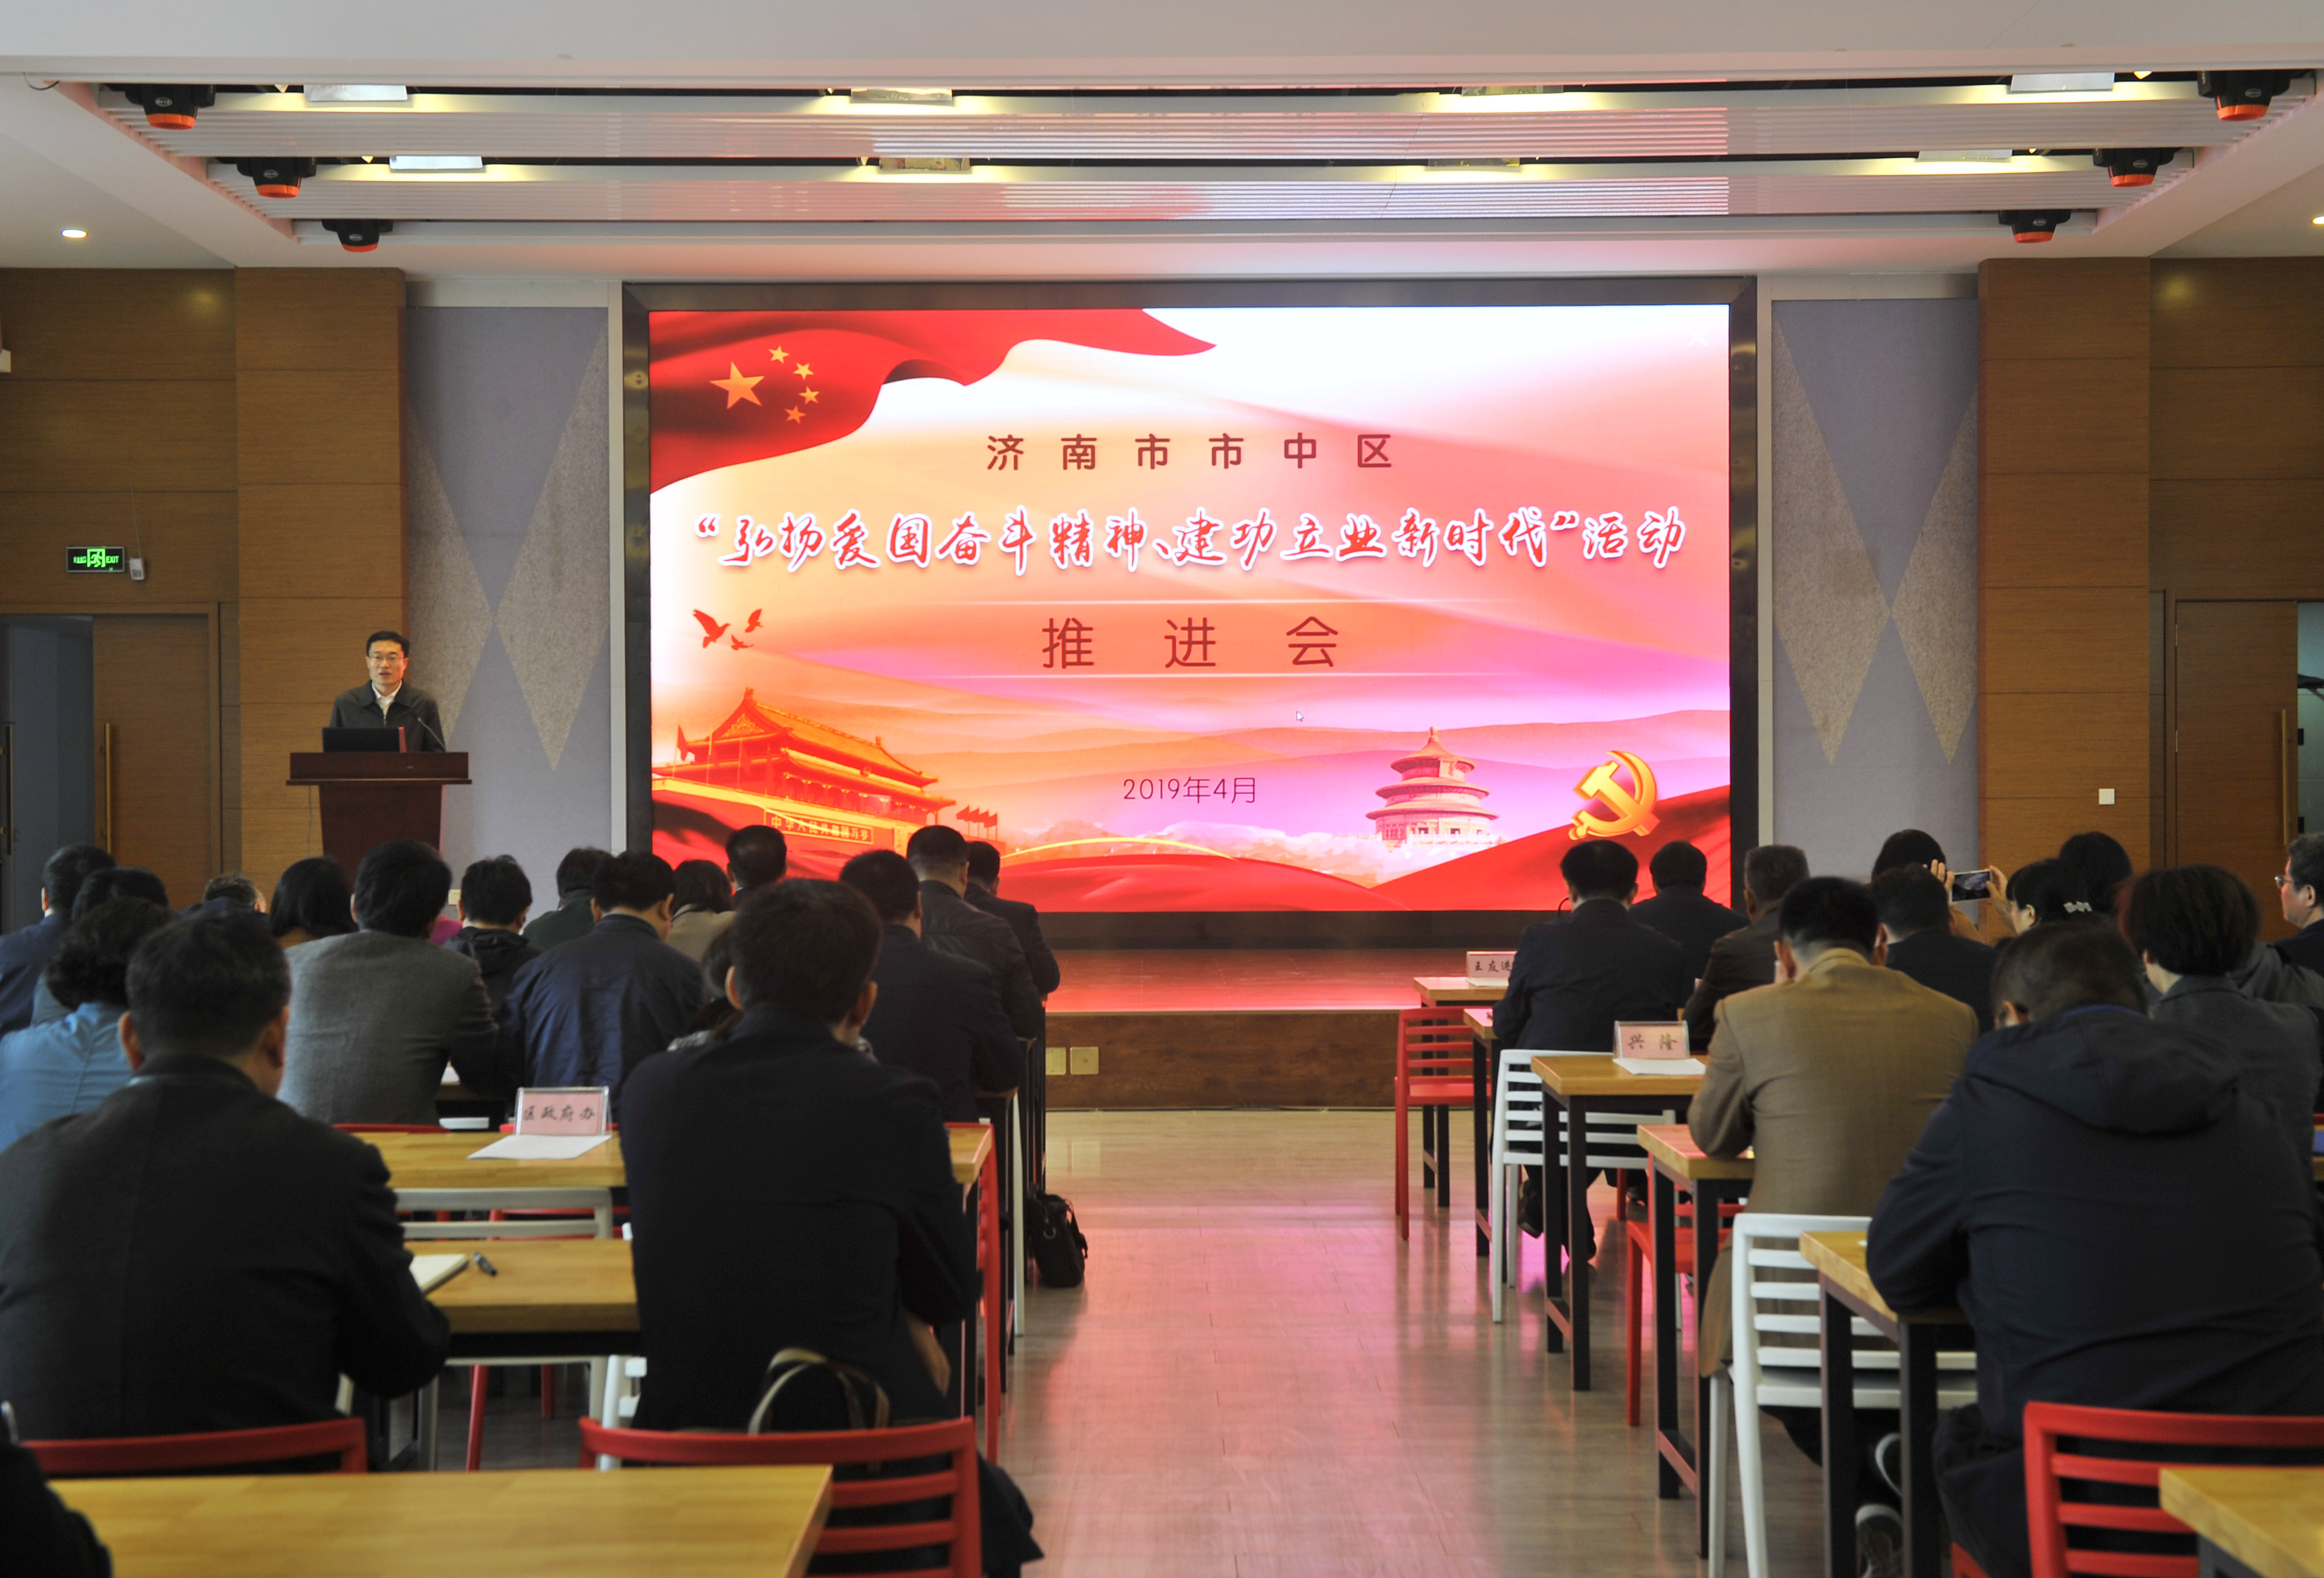 济南市中区开展五大行动 “弘扬爱国奋斗精神、建功立业新时代”